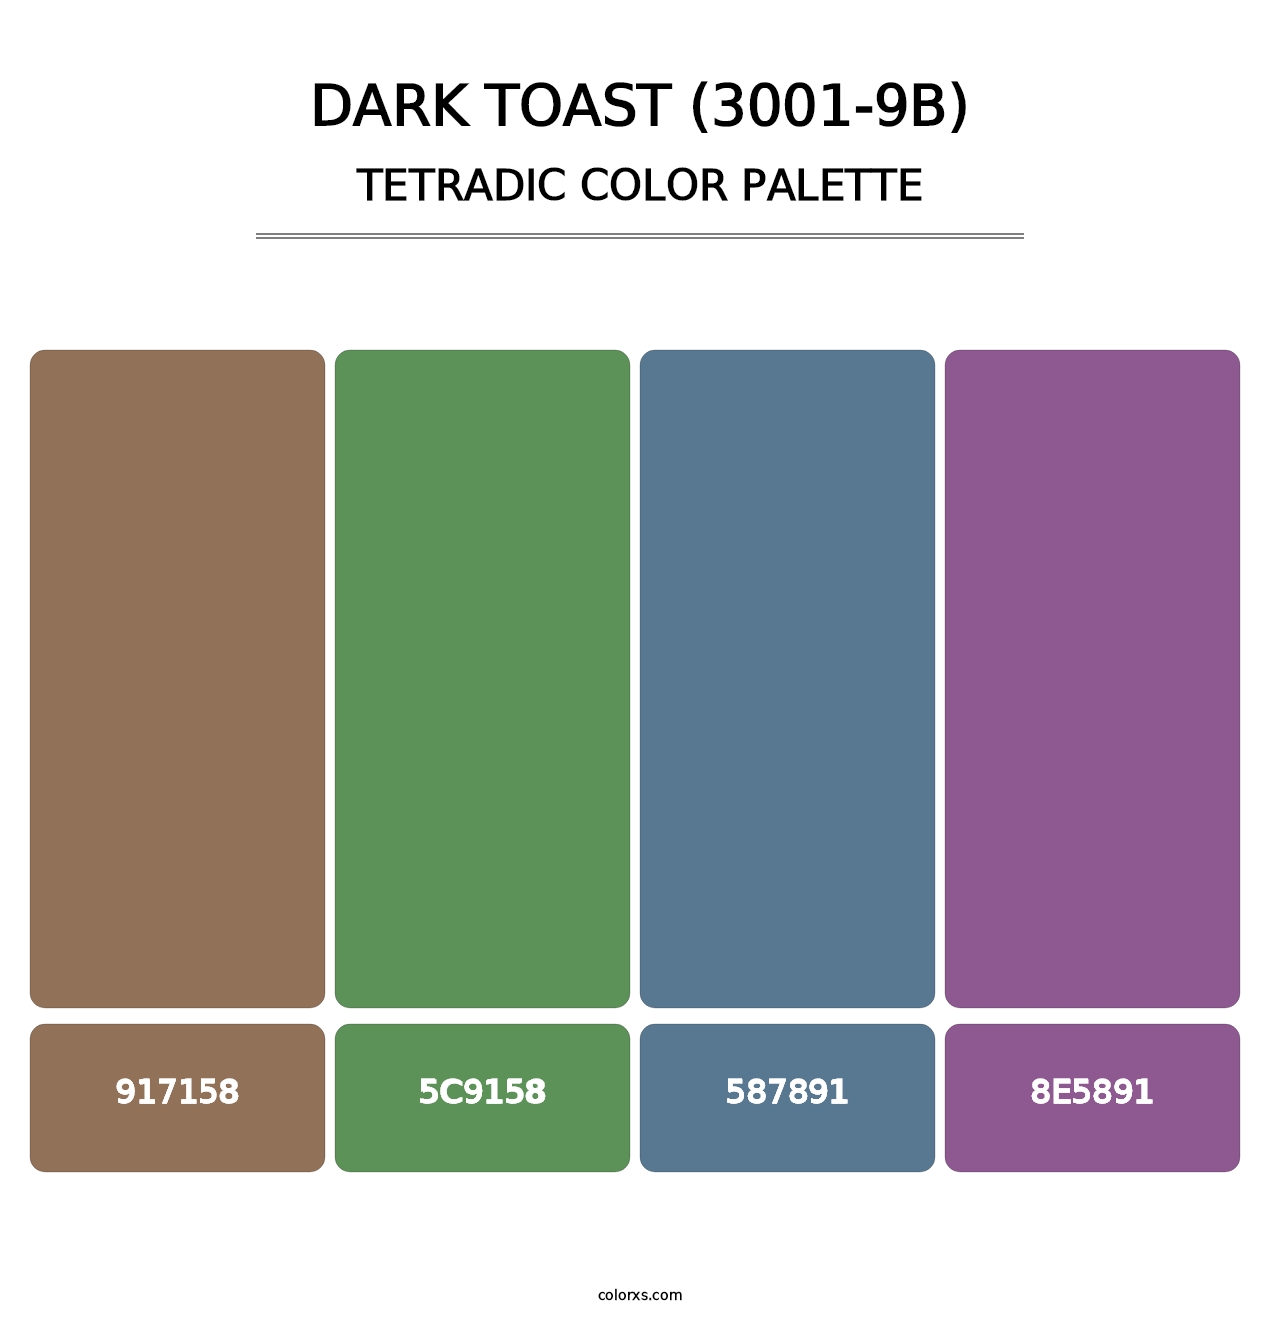 Dark Toast (3001-9B) - Tetradic Color Palette